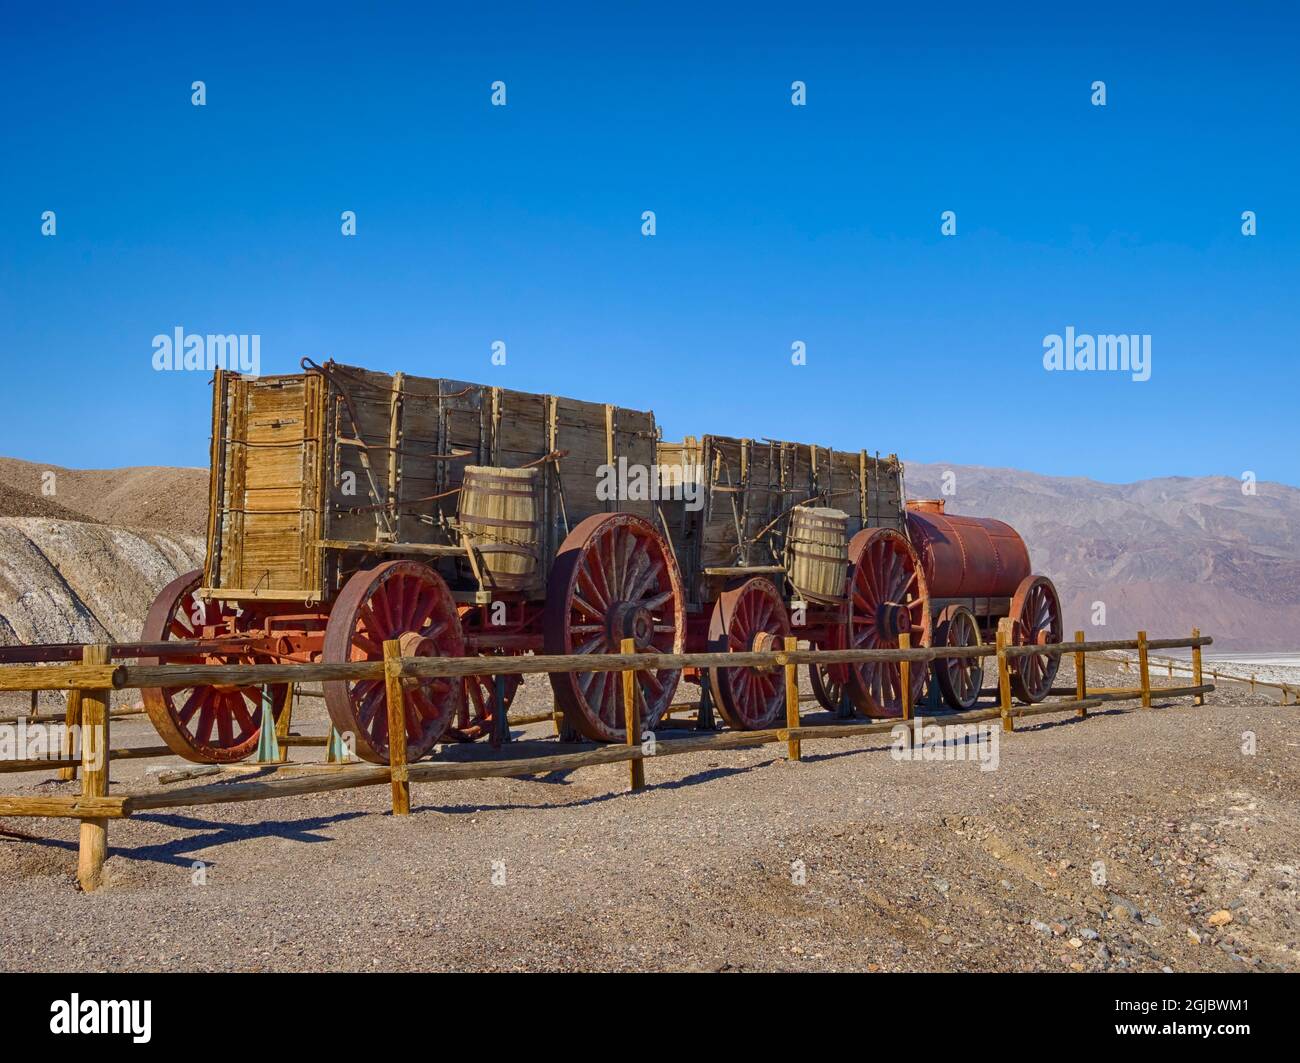 USA, California. Death Valley National Park, 20 Mule Team Wagon Train, carri per il minerale e 1200 galloni di serbatoio d'acqua utilizzati per i muli. Foto Stock